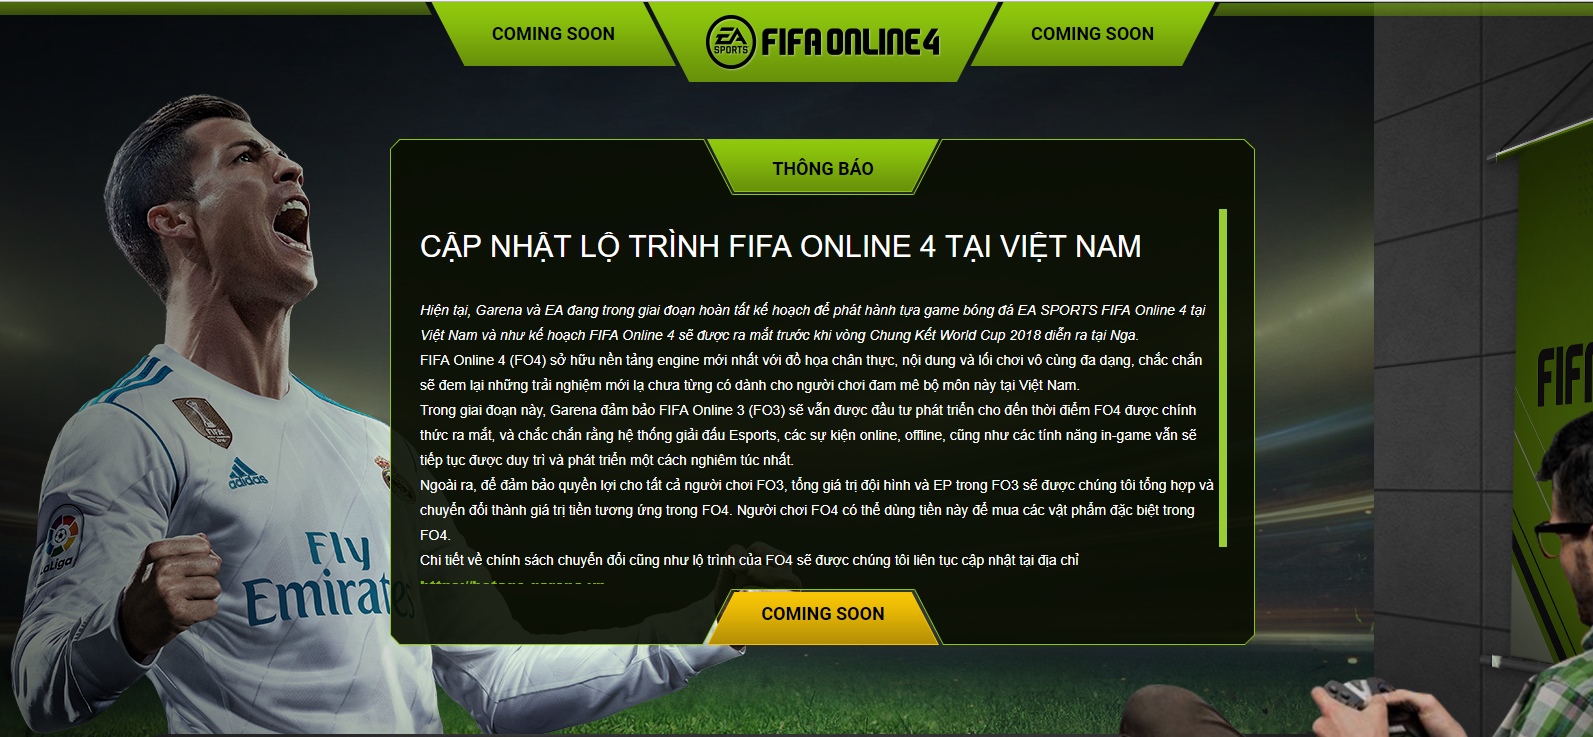 FIFA Online 4 được Garena đàm phán mua thành công, ấn định thời điểm ra mắt tại Việt Nam Fo4-anh-chup-ytb-11